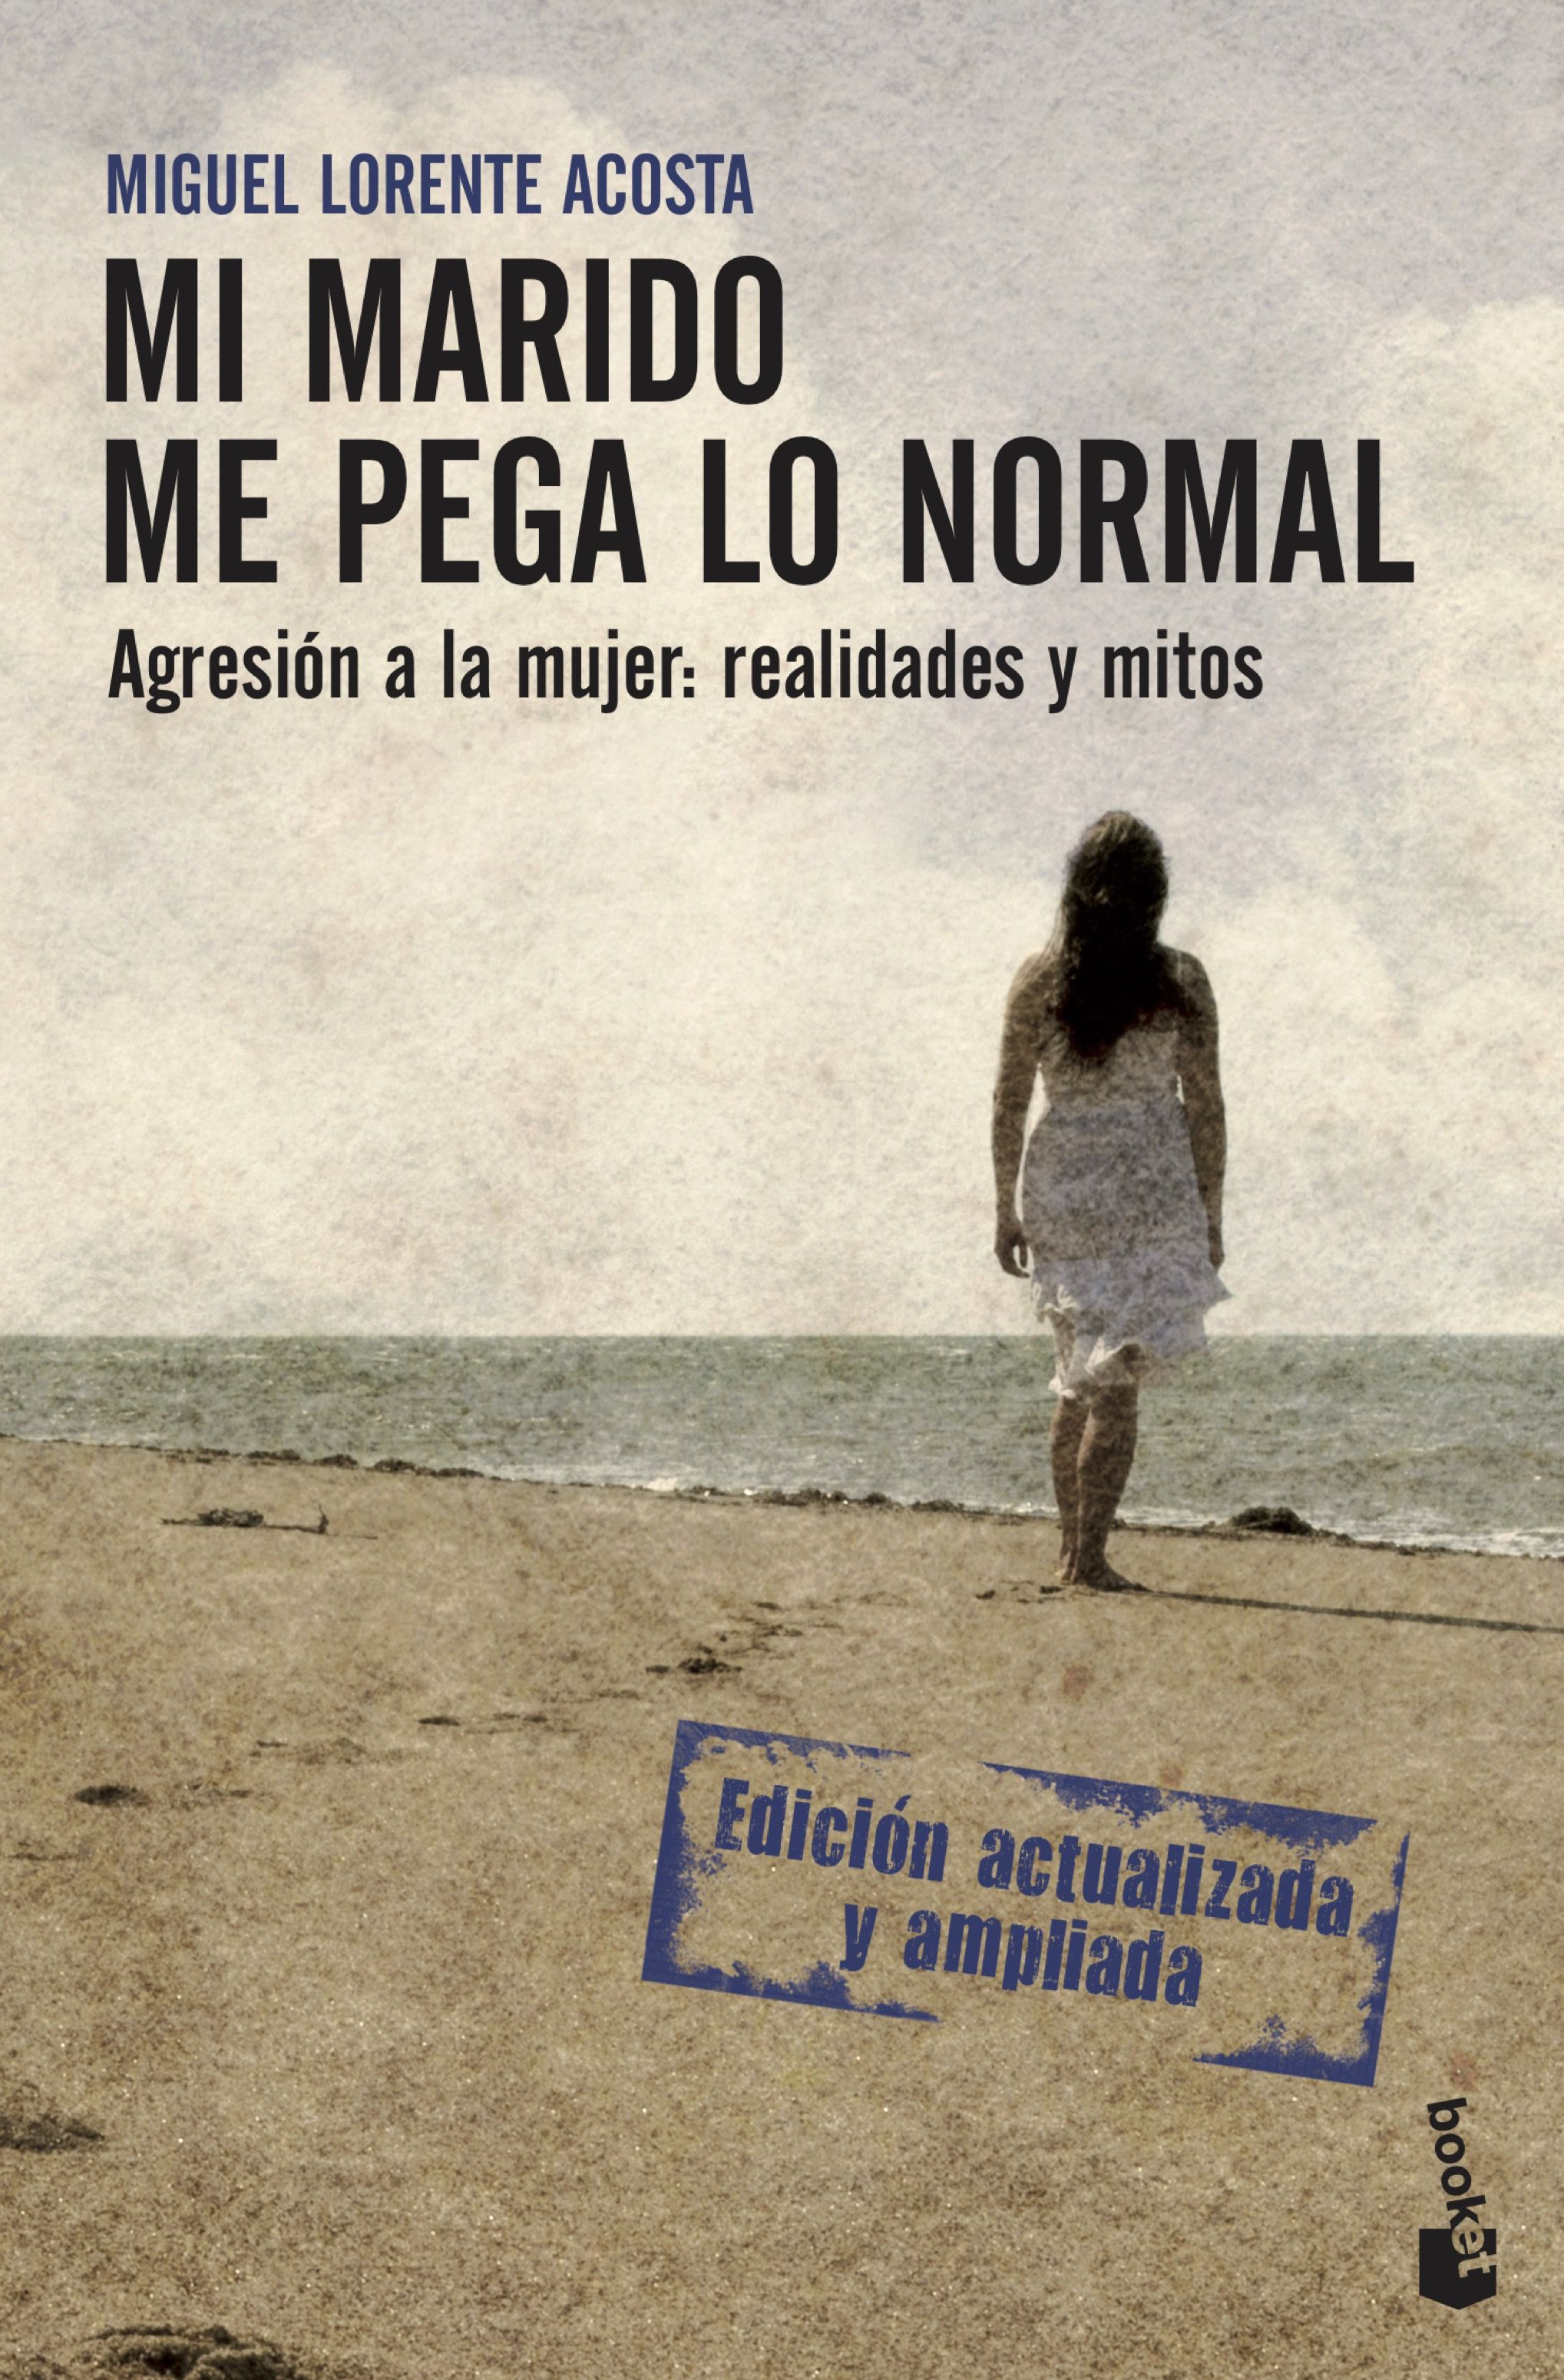 Mi marido me pega lo normal, de Miguel Lorente Acosta. En nuestra selección de libros contra la violencia de género.